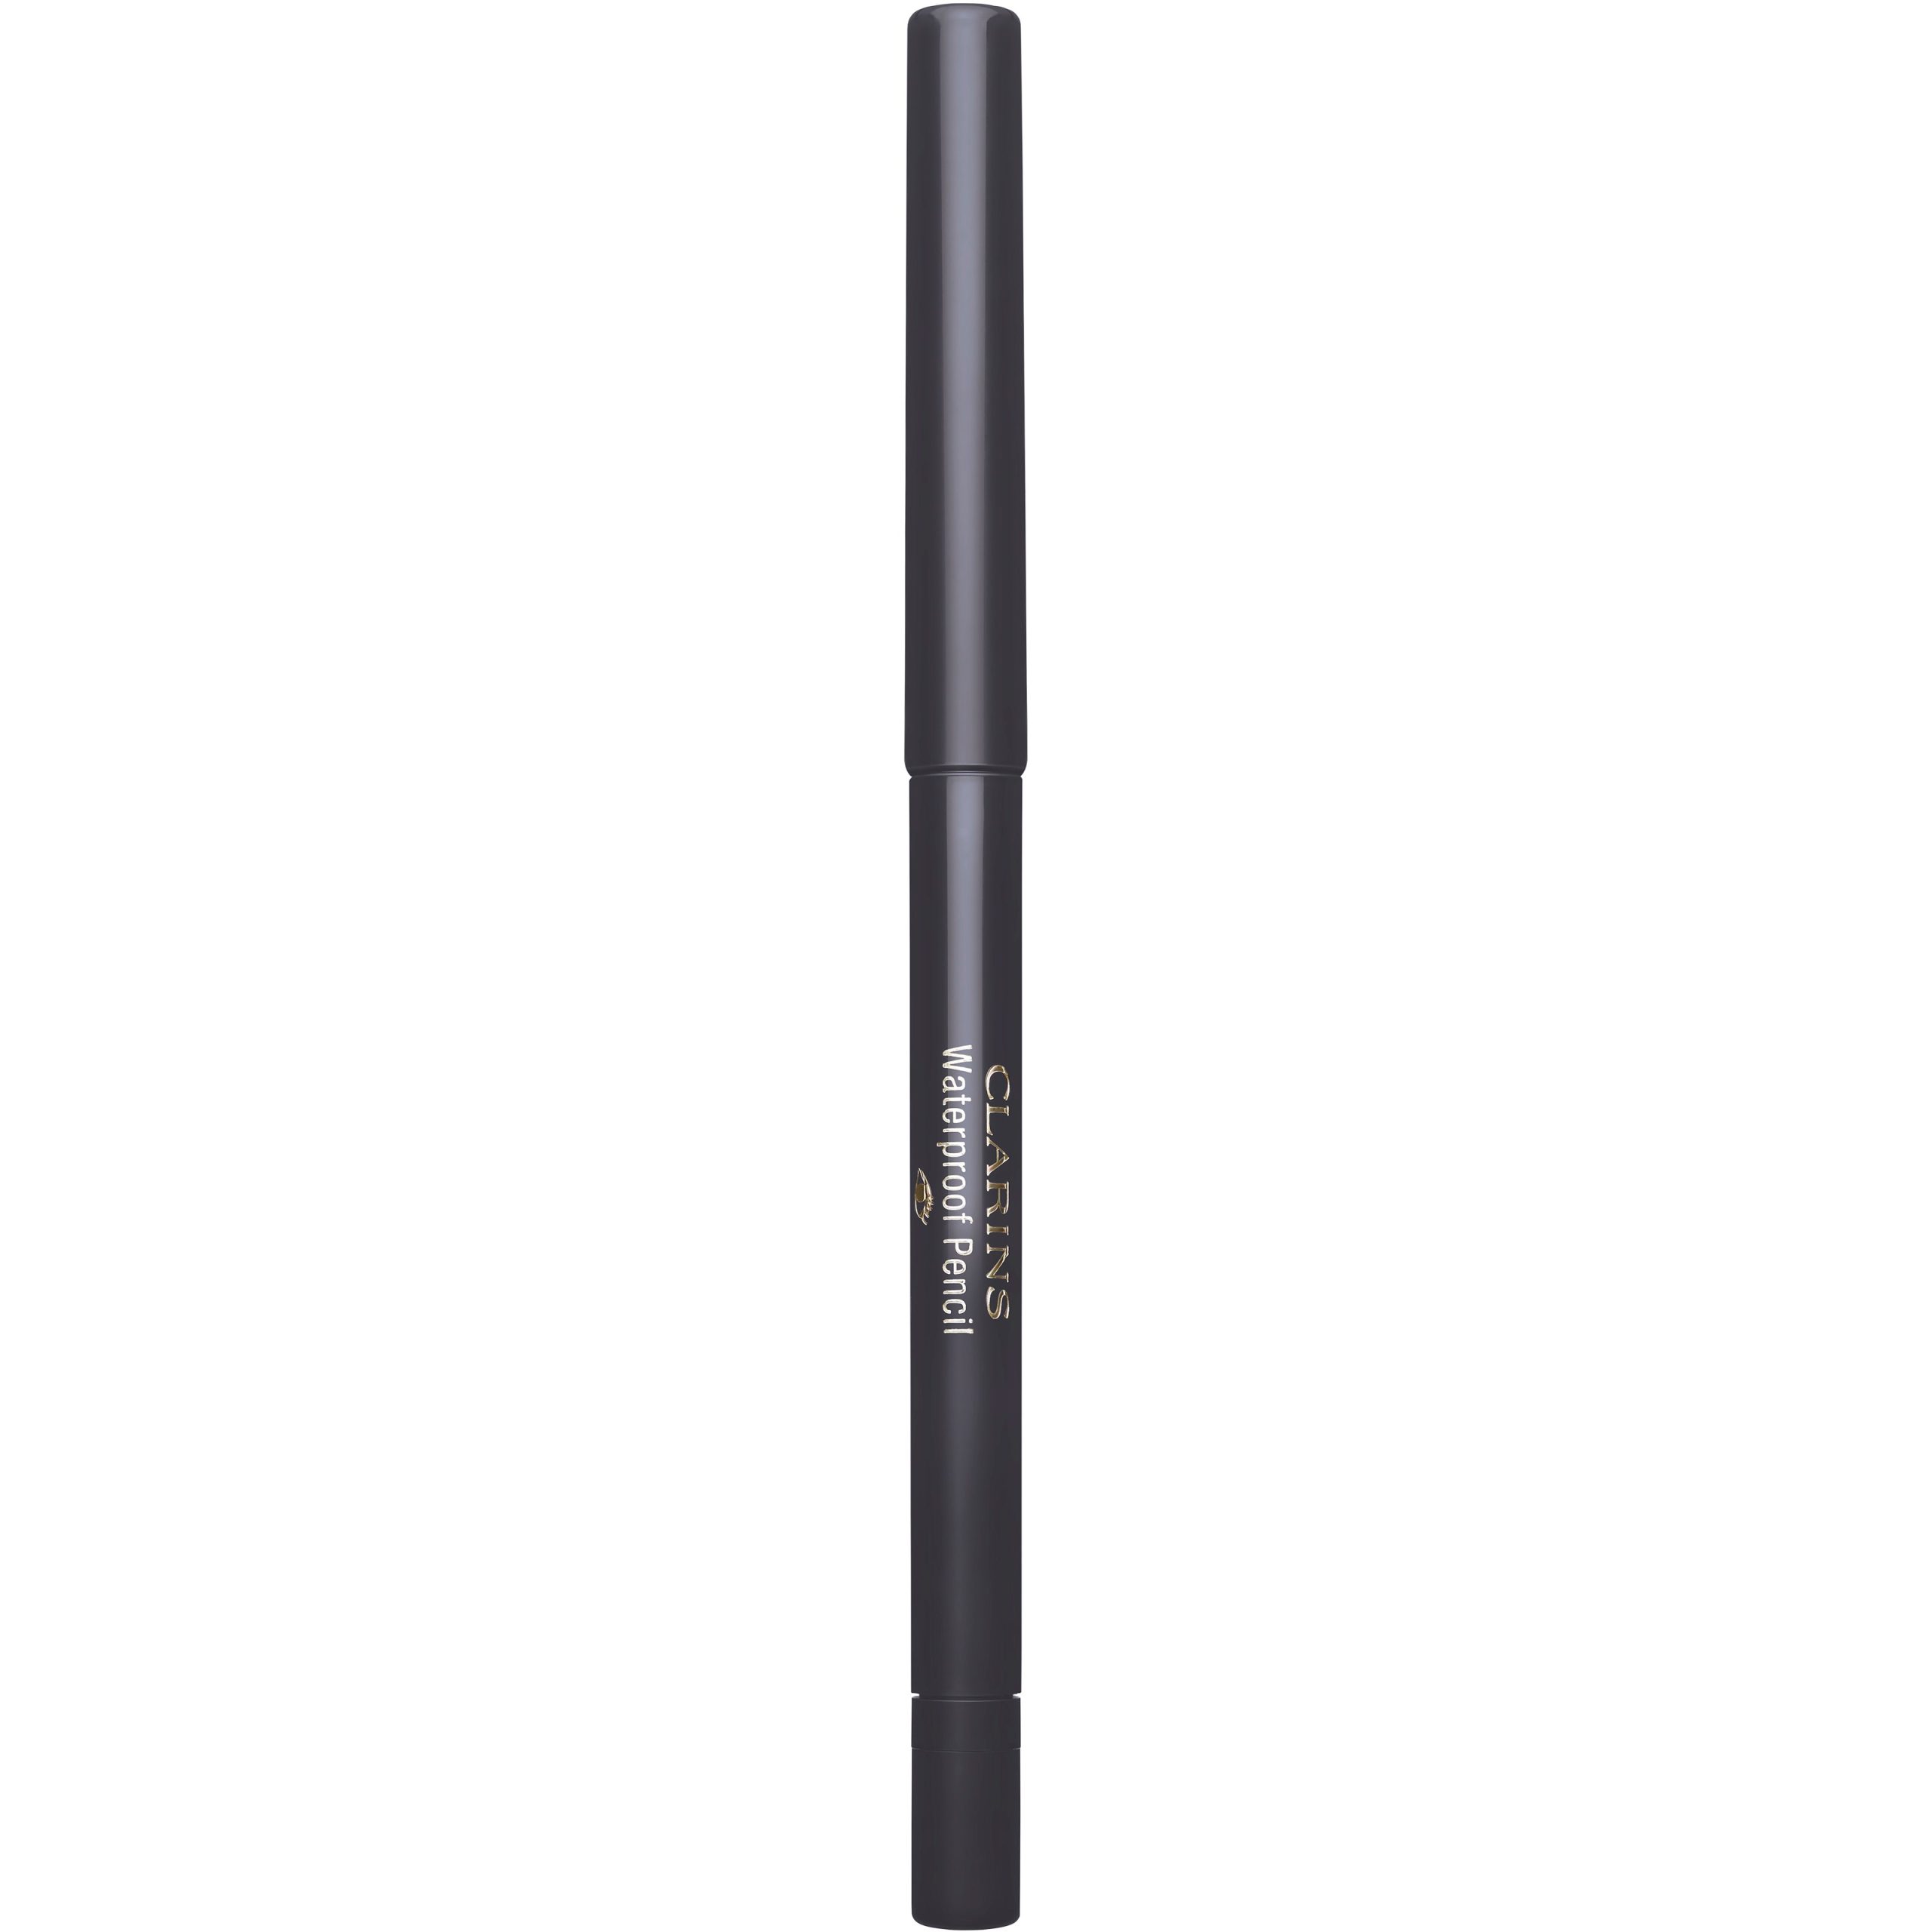 Clarins Waterproof Eye Pencil 06 Smoked Wood